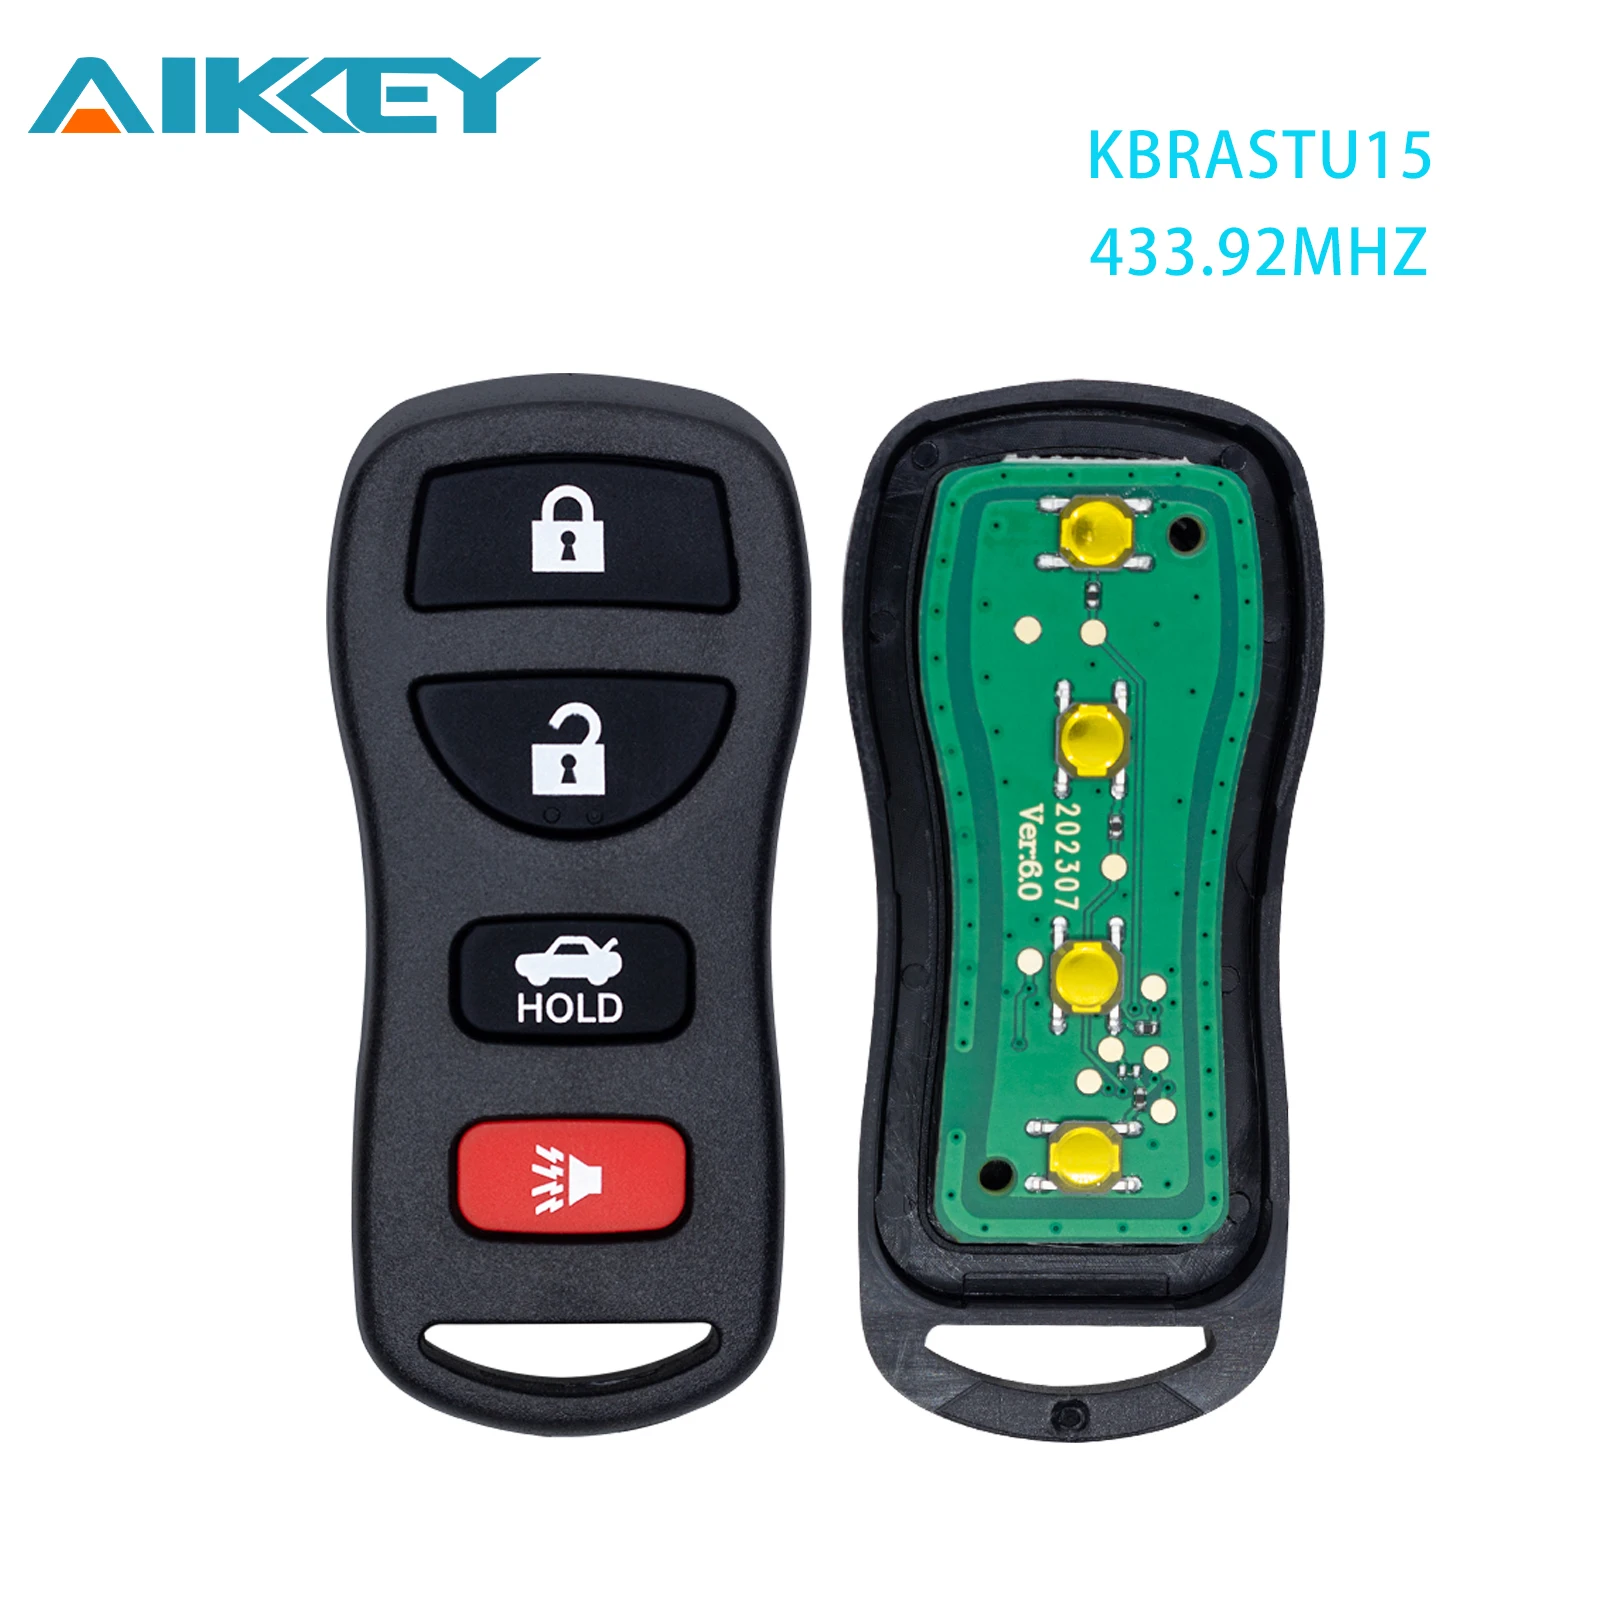 

Remote Car Key KBRASTU15 433MHZ ASK For Nissan Altima Maxima Sentra 350Z Murano Infiniti FX45 G35 I35 QX4 2003-2011